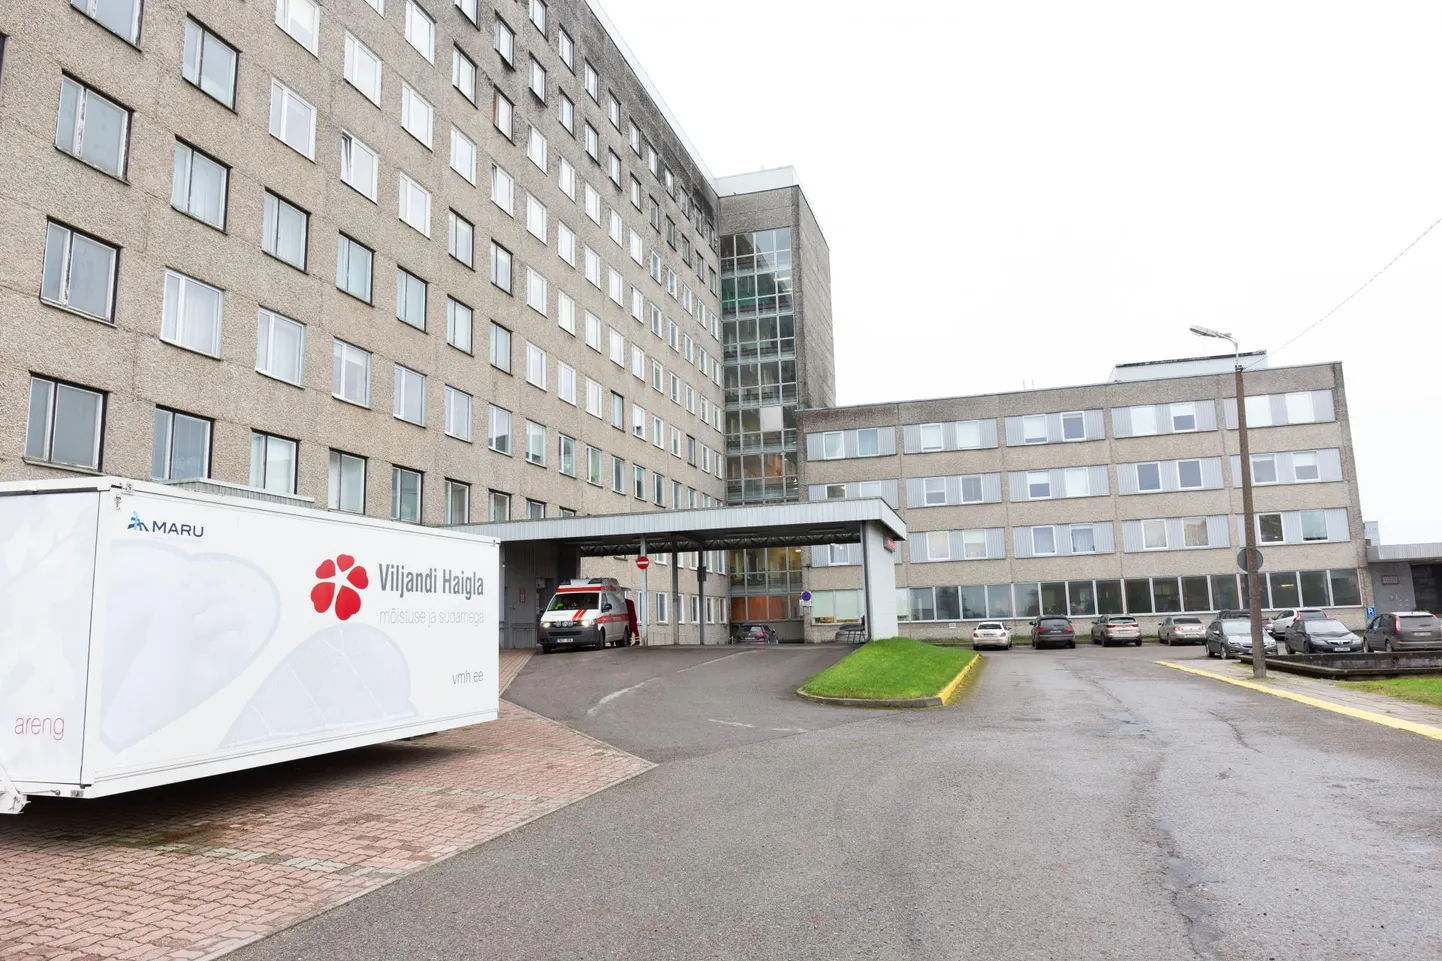 Viljandi haigla teeb lõunastaabiga tihedat koostööd ning on valmis avama COVID-iosakonna.